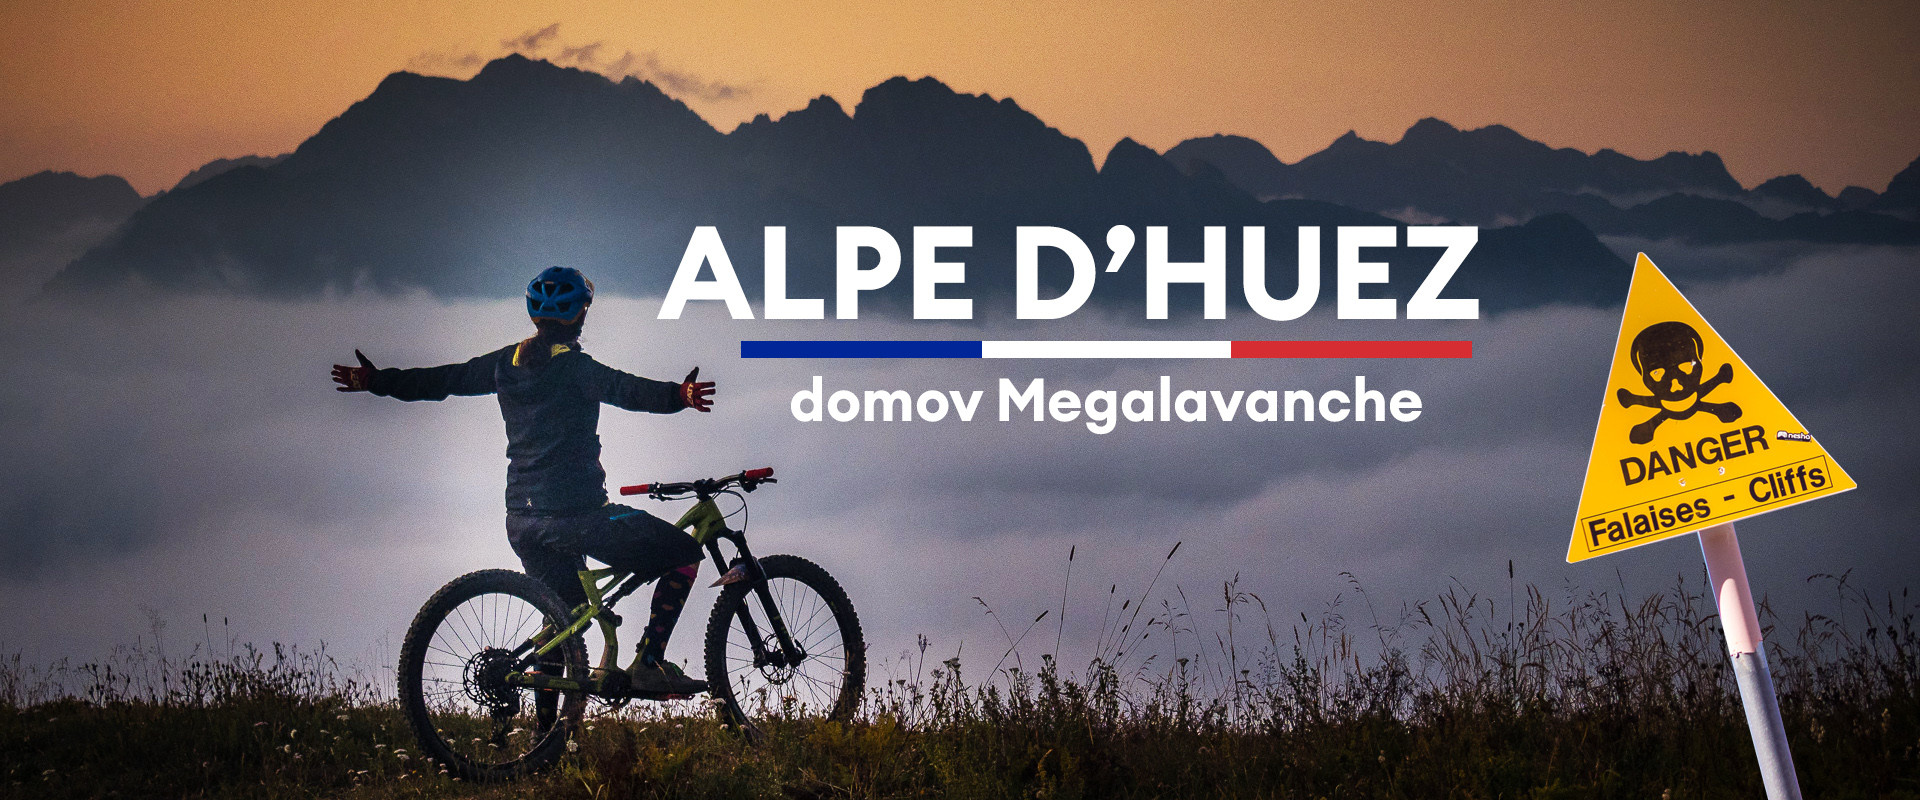 Alpe d’Huez - domov MEGAVALANCHE, najšialenejšieho hromadného enduro závodu sveta